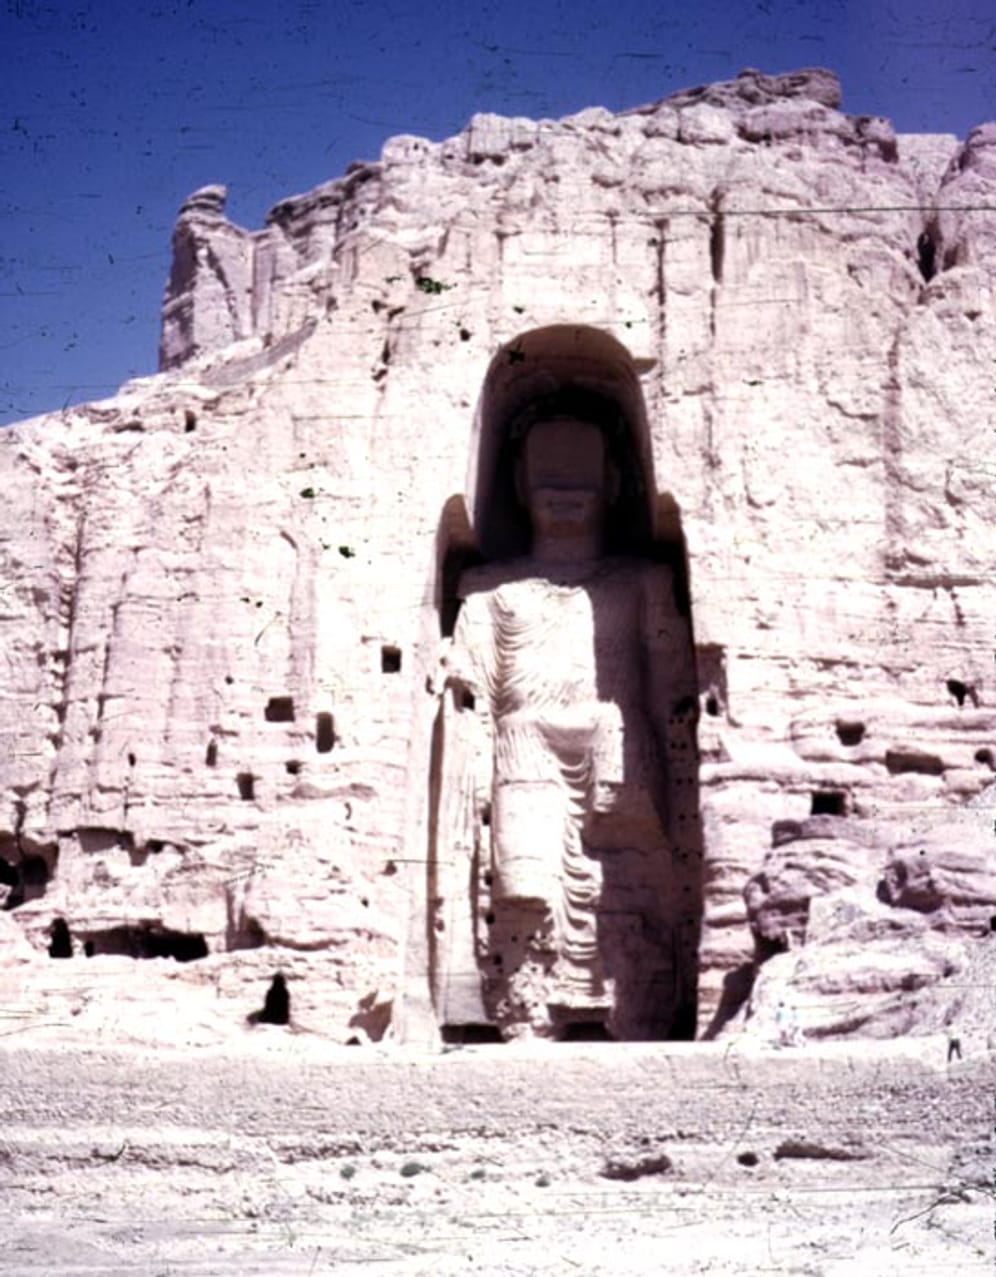 Das Bild zeigt eine der größten stehenden Buddha-Statuen der Welt. Sie war 53 Meter hoch. 2001 wurde sie durch die Taliban zerstört, weil die Scharia ihrer Auslegung zufolge eine Darstellung von menschlichen Figuren verbietet.